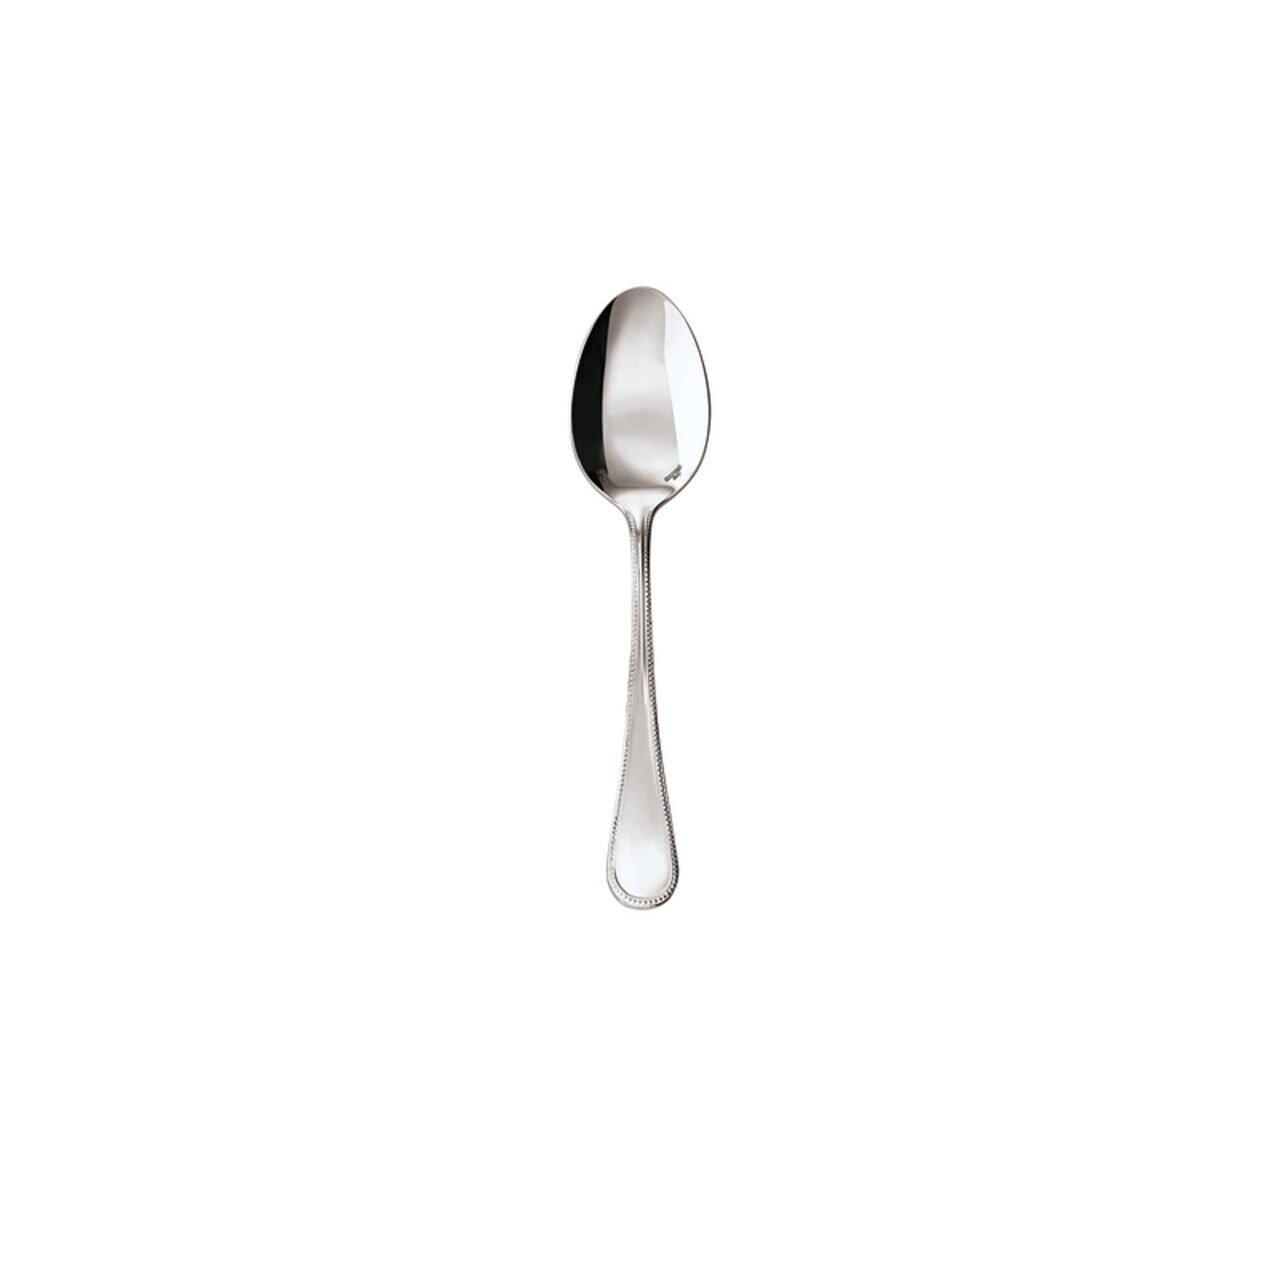 Sambonet Perles Moka Spoon 52502-37